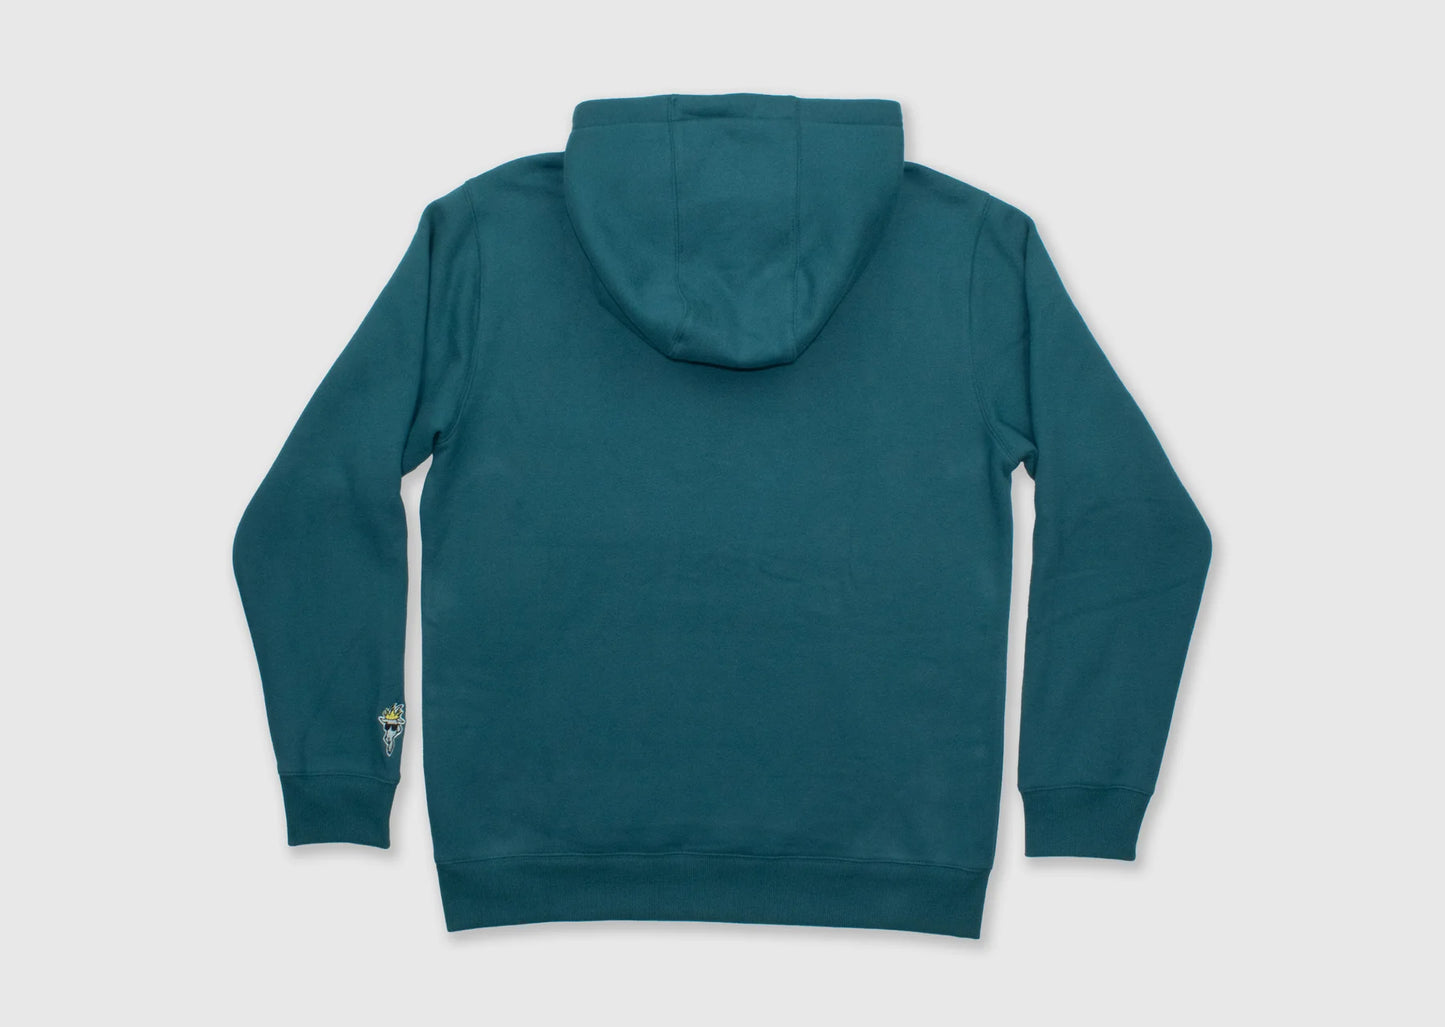 GOAT USA WG Hoody Sweatshirt | Emerald